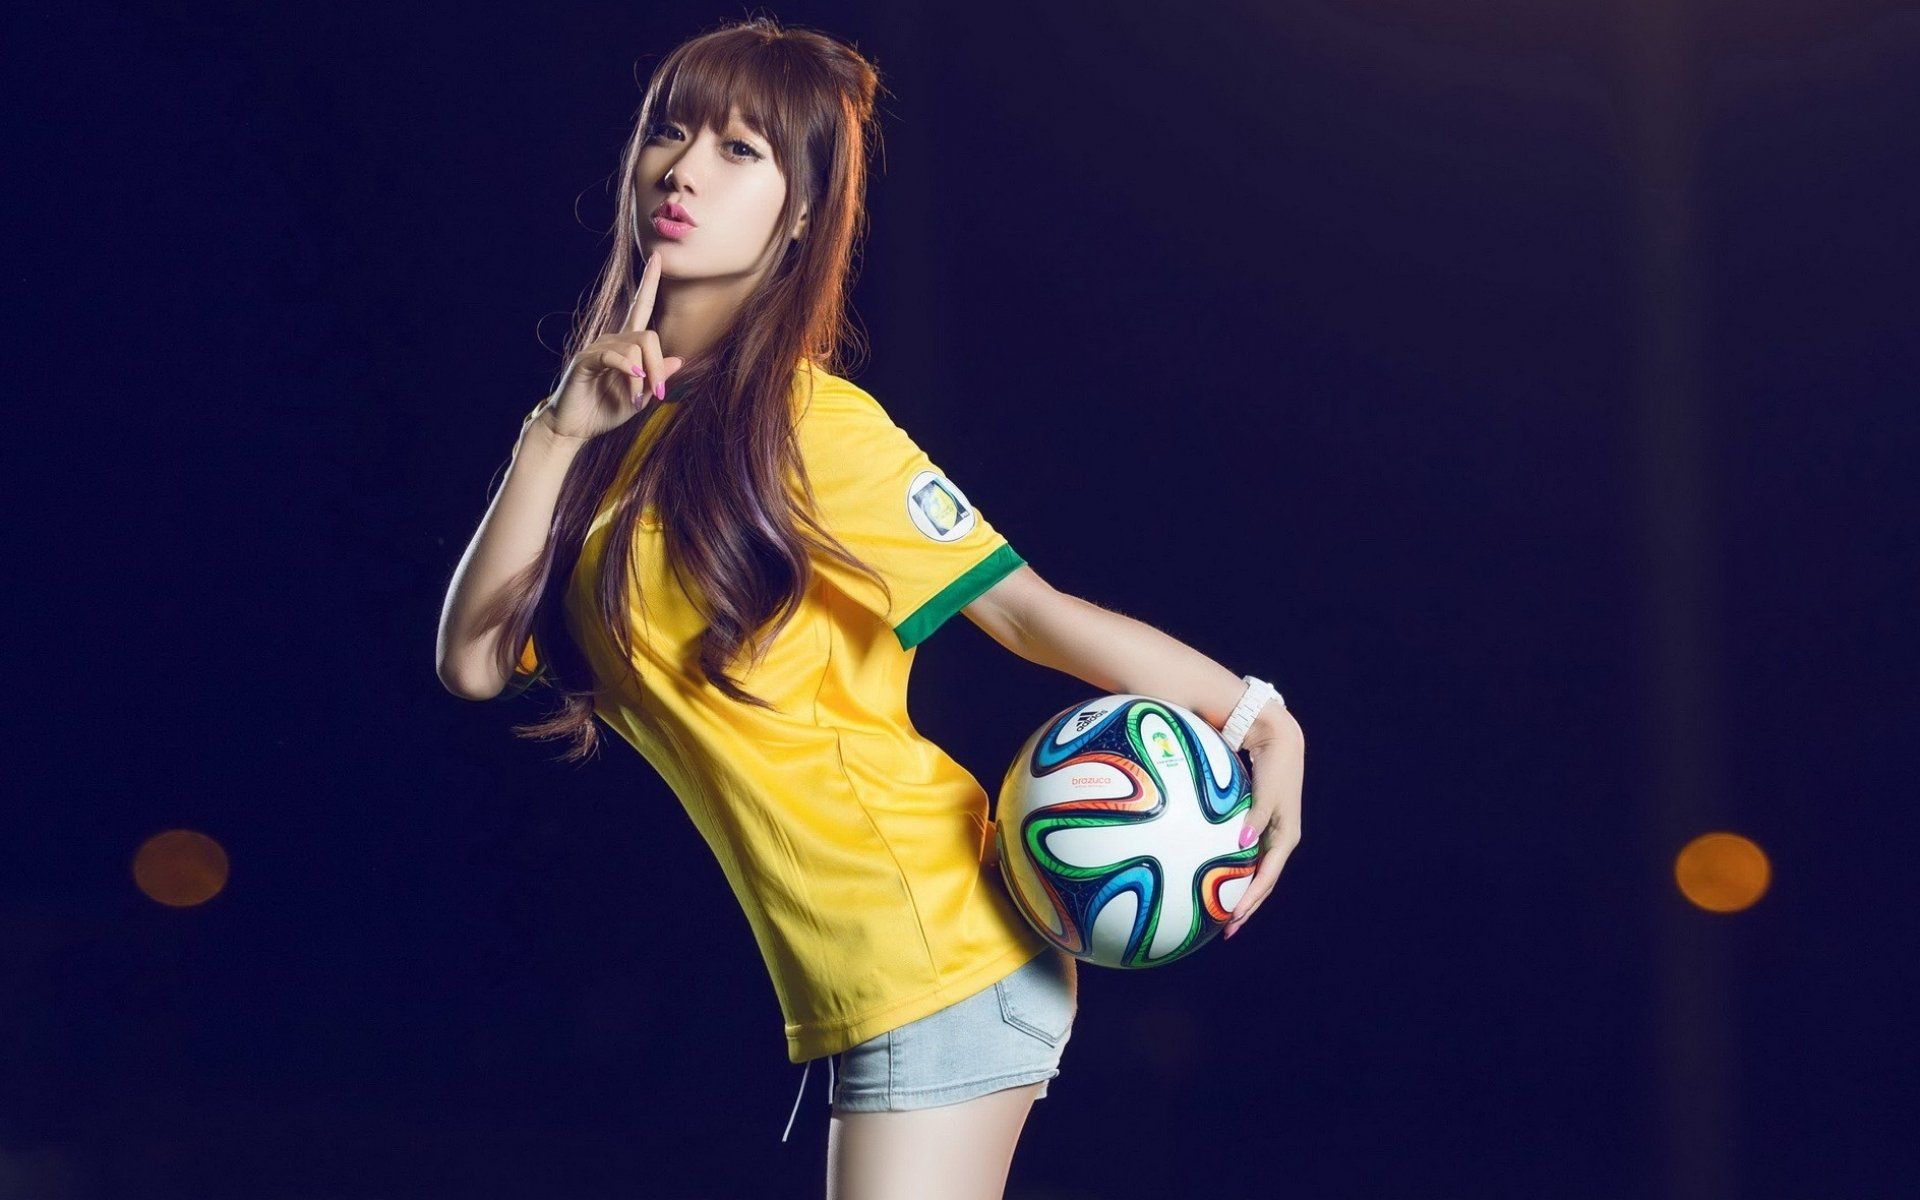 Oriental asian girl girls woman women female model sports soccer